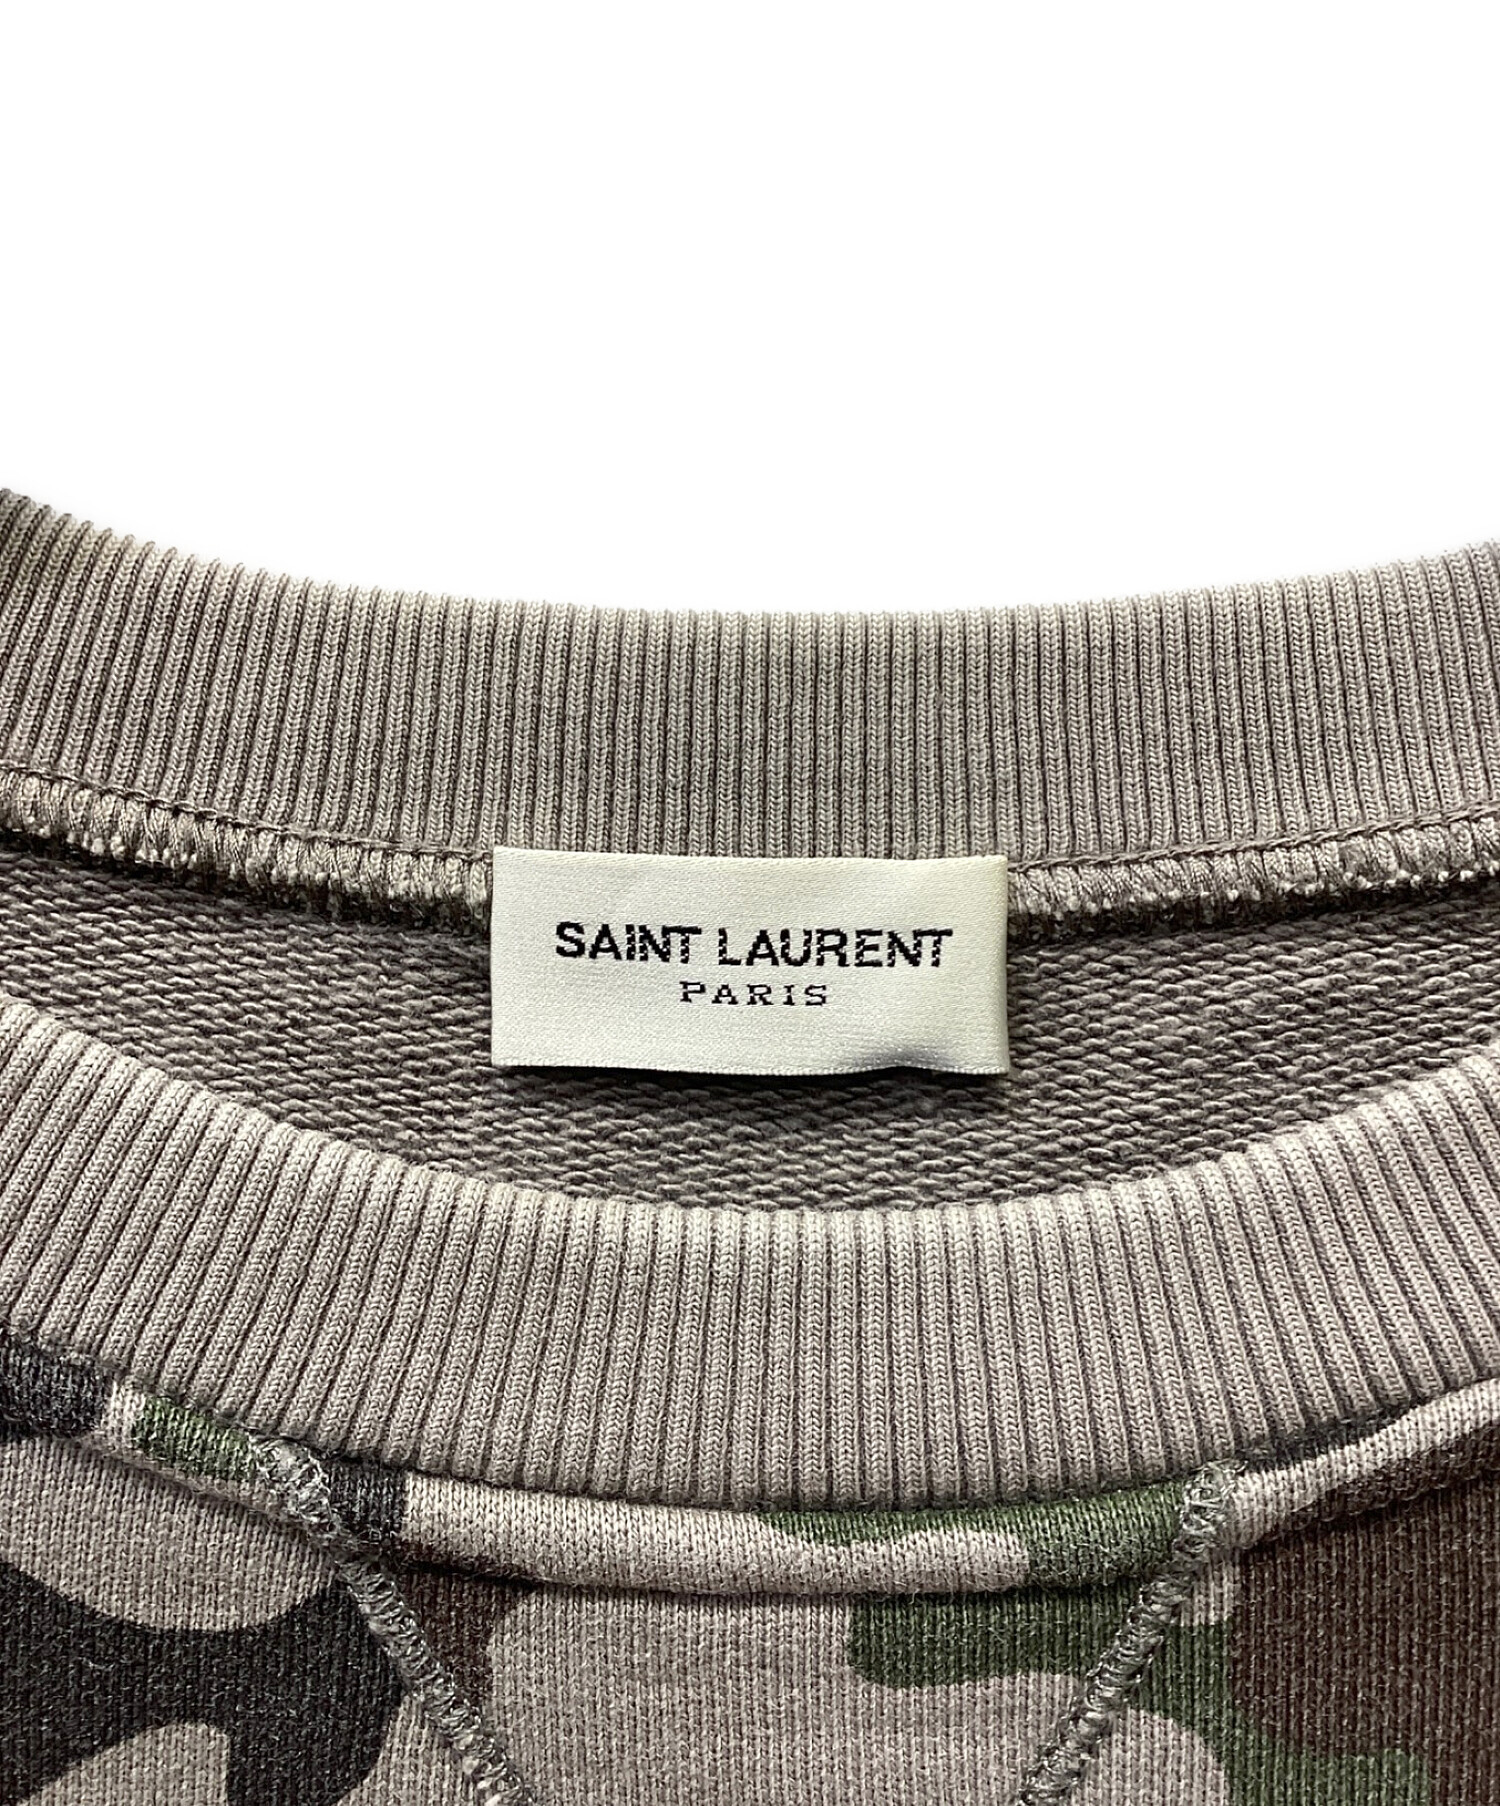 Saint Laurent Paris (サンローランパリ) カモフラ スウェット グレー サイズ:S